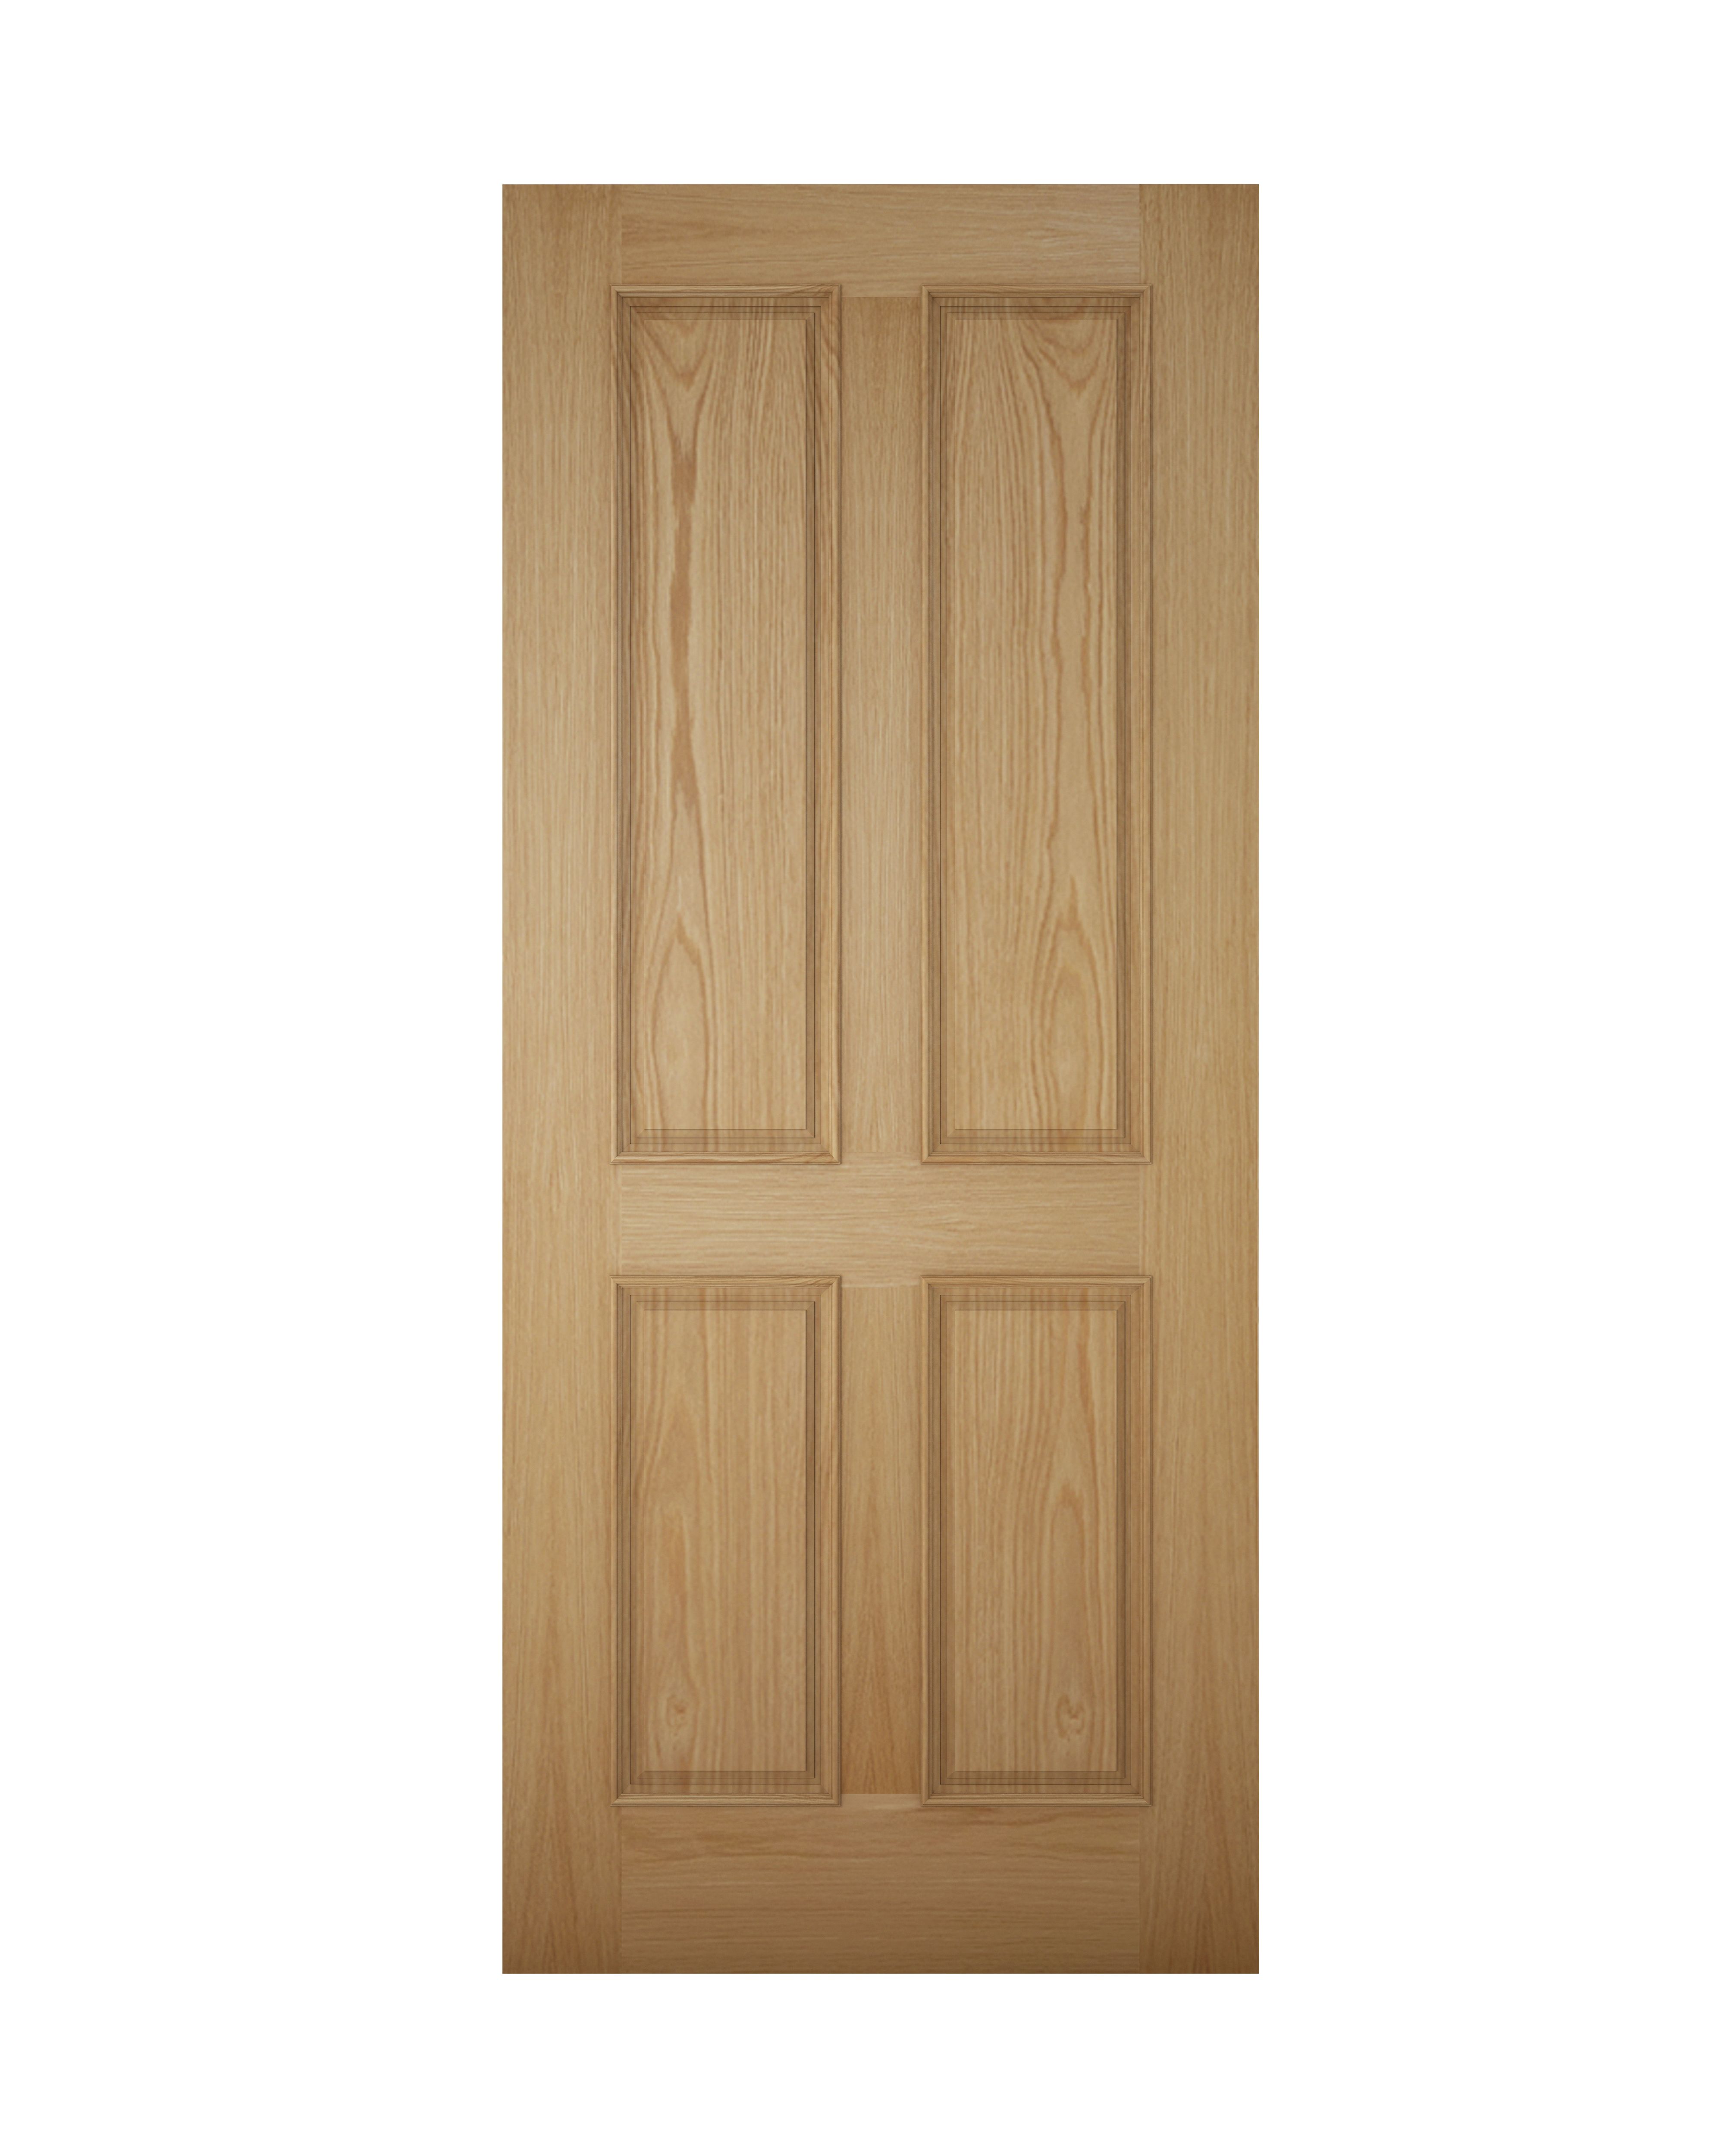 4 panel White oak veneer Left & RHed Front door, (H)1981mm (W)762mm